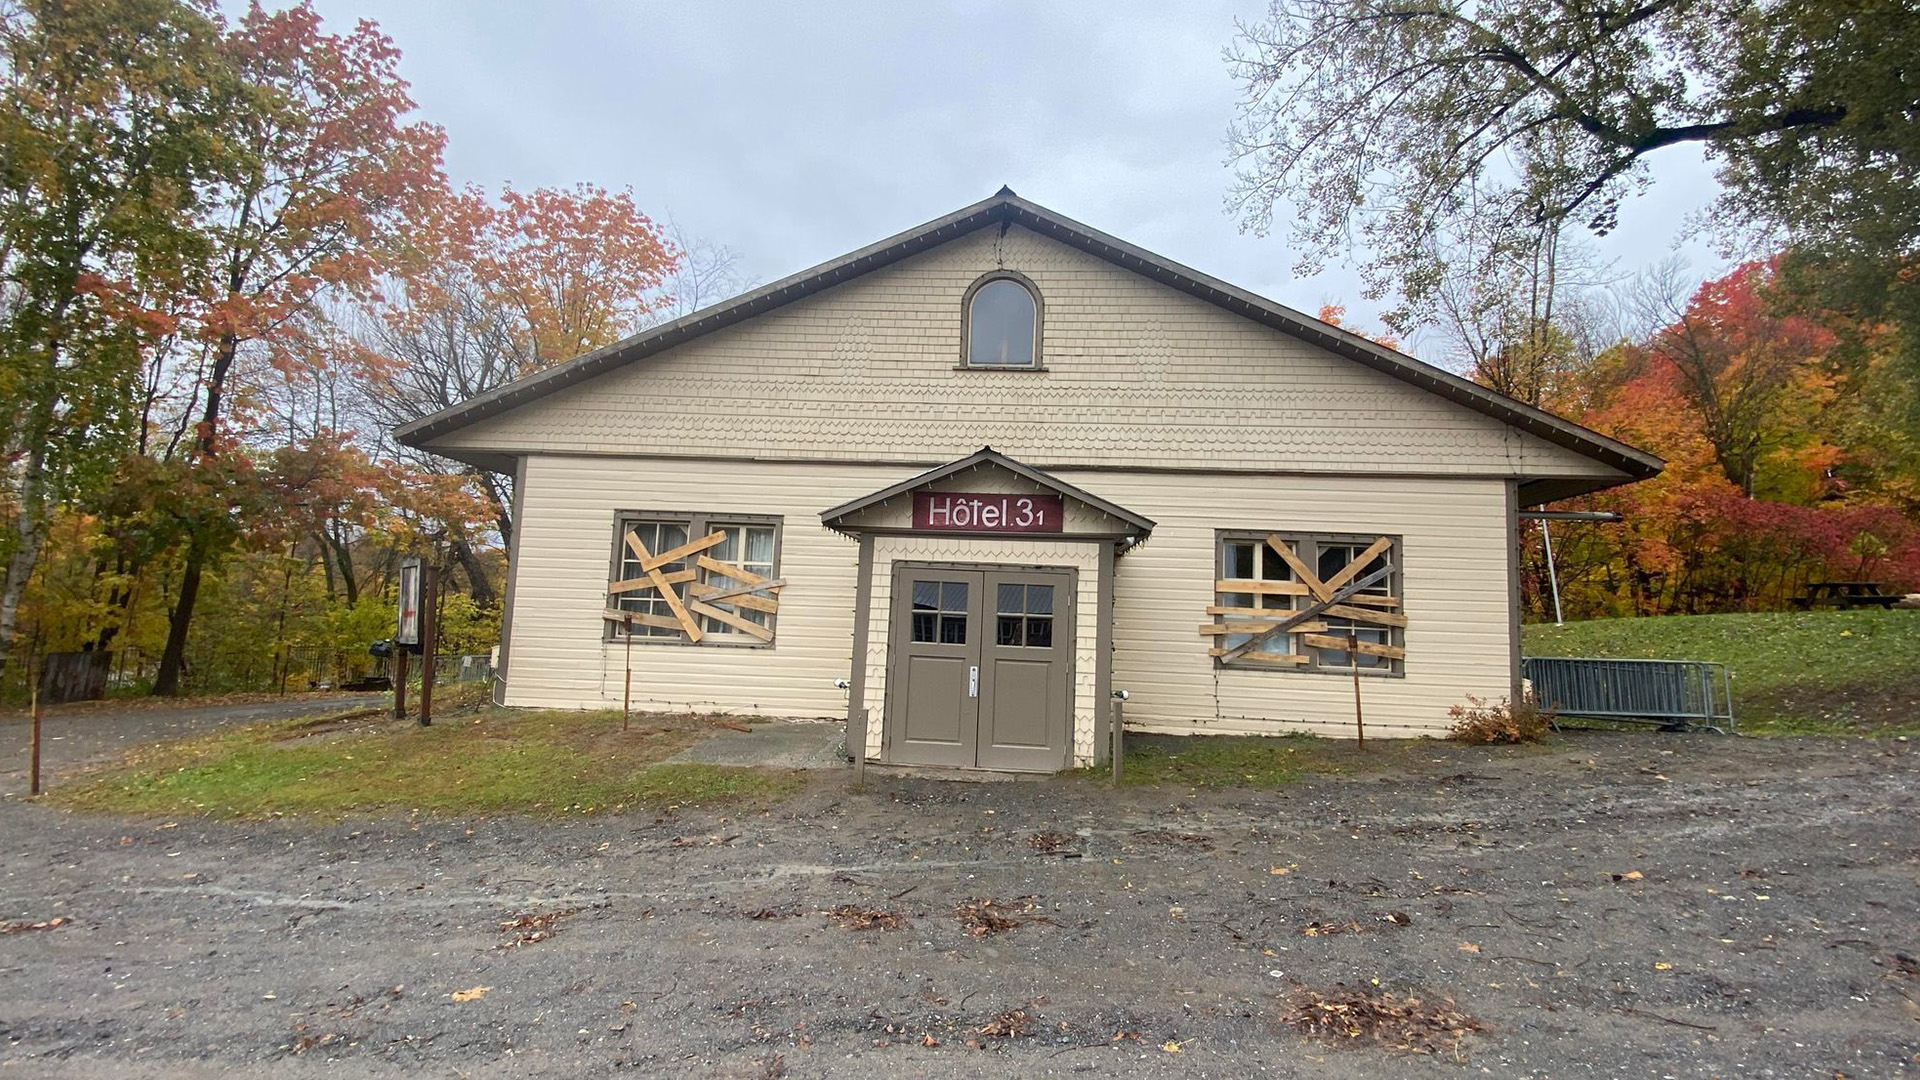 Le Village québécois d’Antan de Drummondville a pris la décision, jeudi, de fermer sa maison d’horreur Hôtel 31 du Village Hanté, qui aurait choqué plusieurs visiteurs.